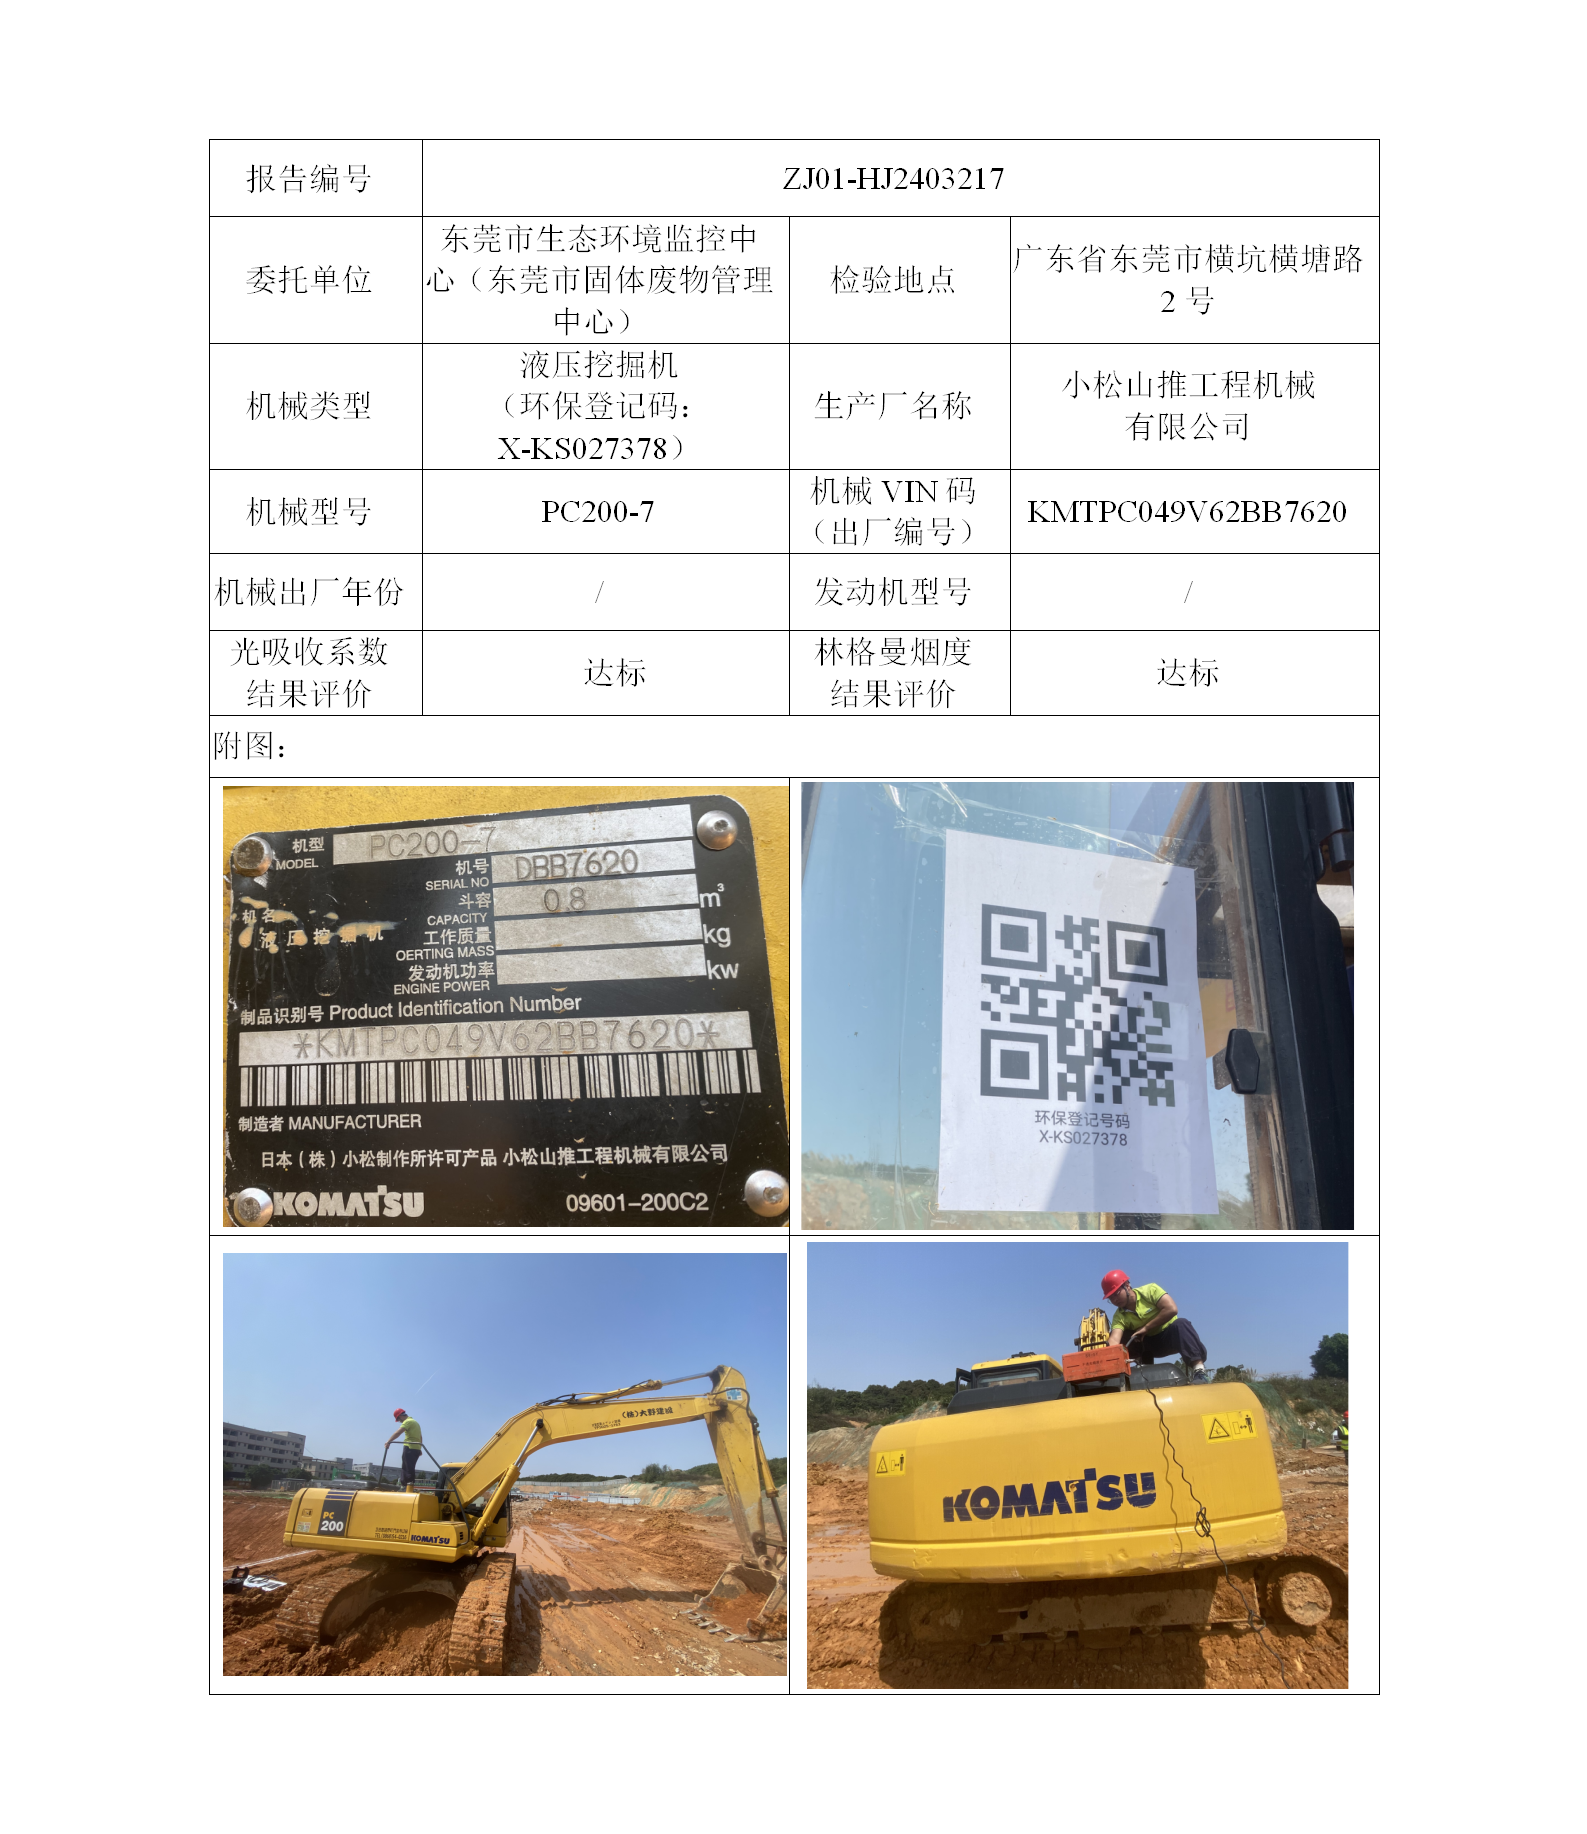 指令性-ZJ01-HJ2403217广东省第一建筑工程有限公司（叉车废气）二维码-江静汶_01.png